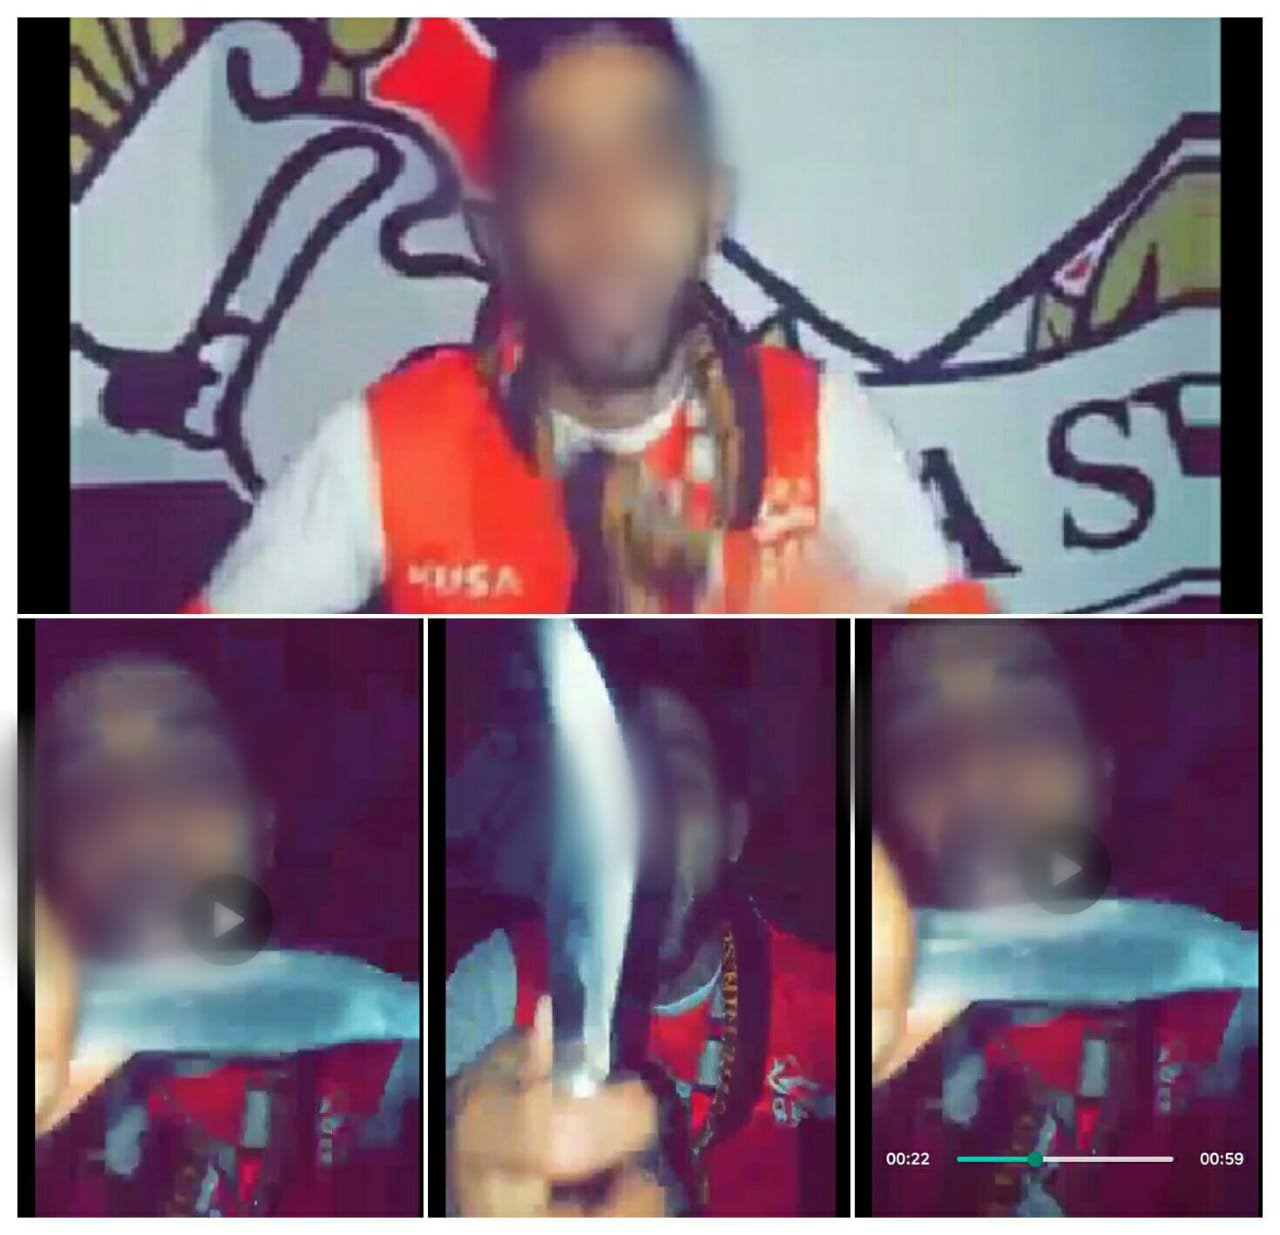 إعتقال مشجع لحسنية أكادير بعد نشره فيديو يتضمن تحريض على العنف